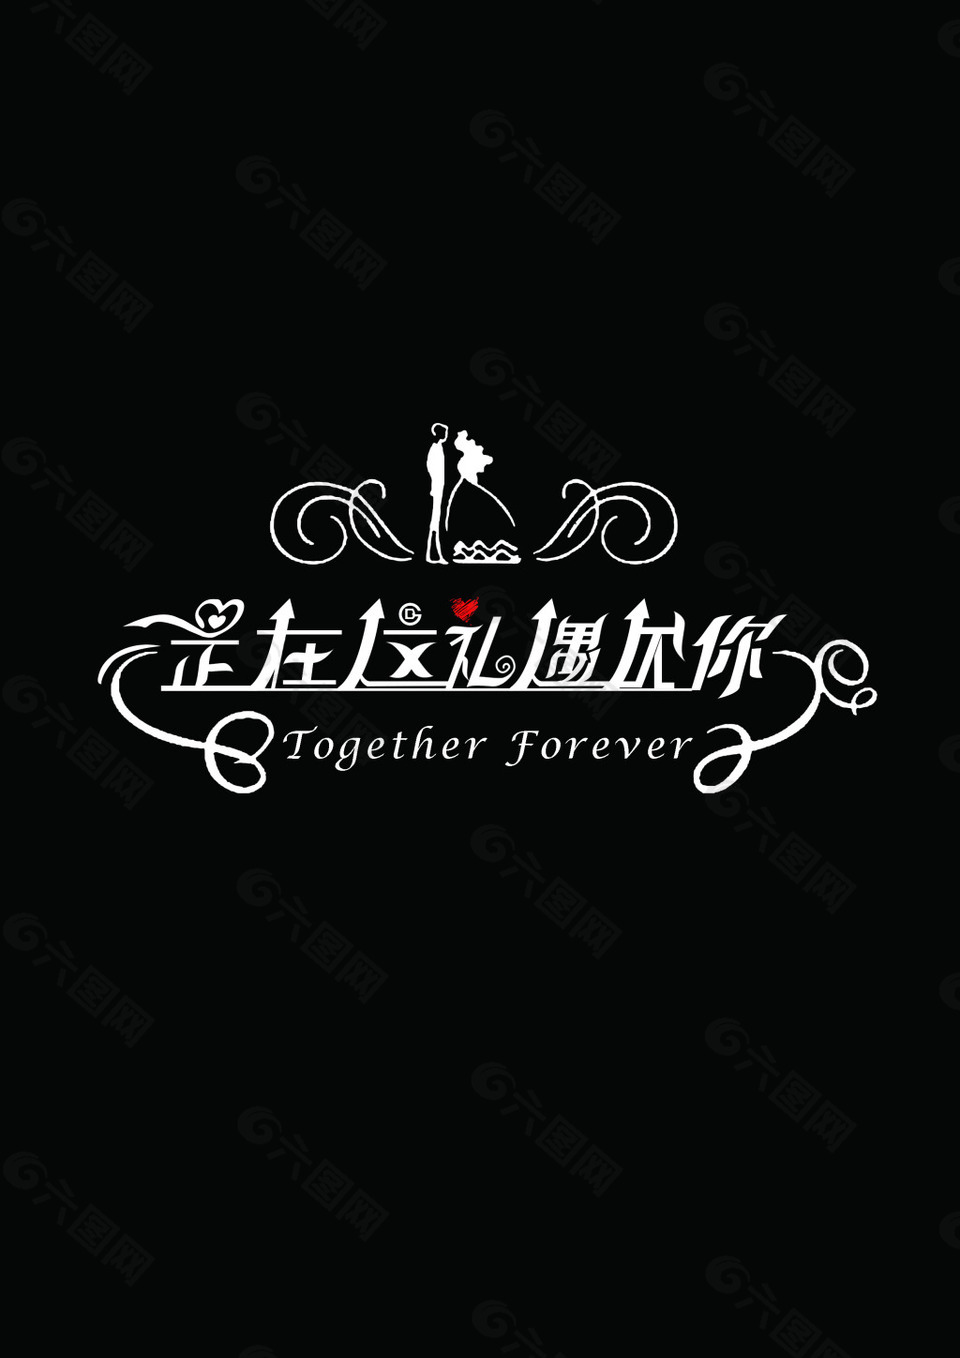 婚礼主题 logo